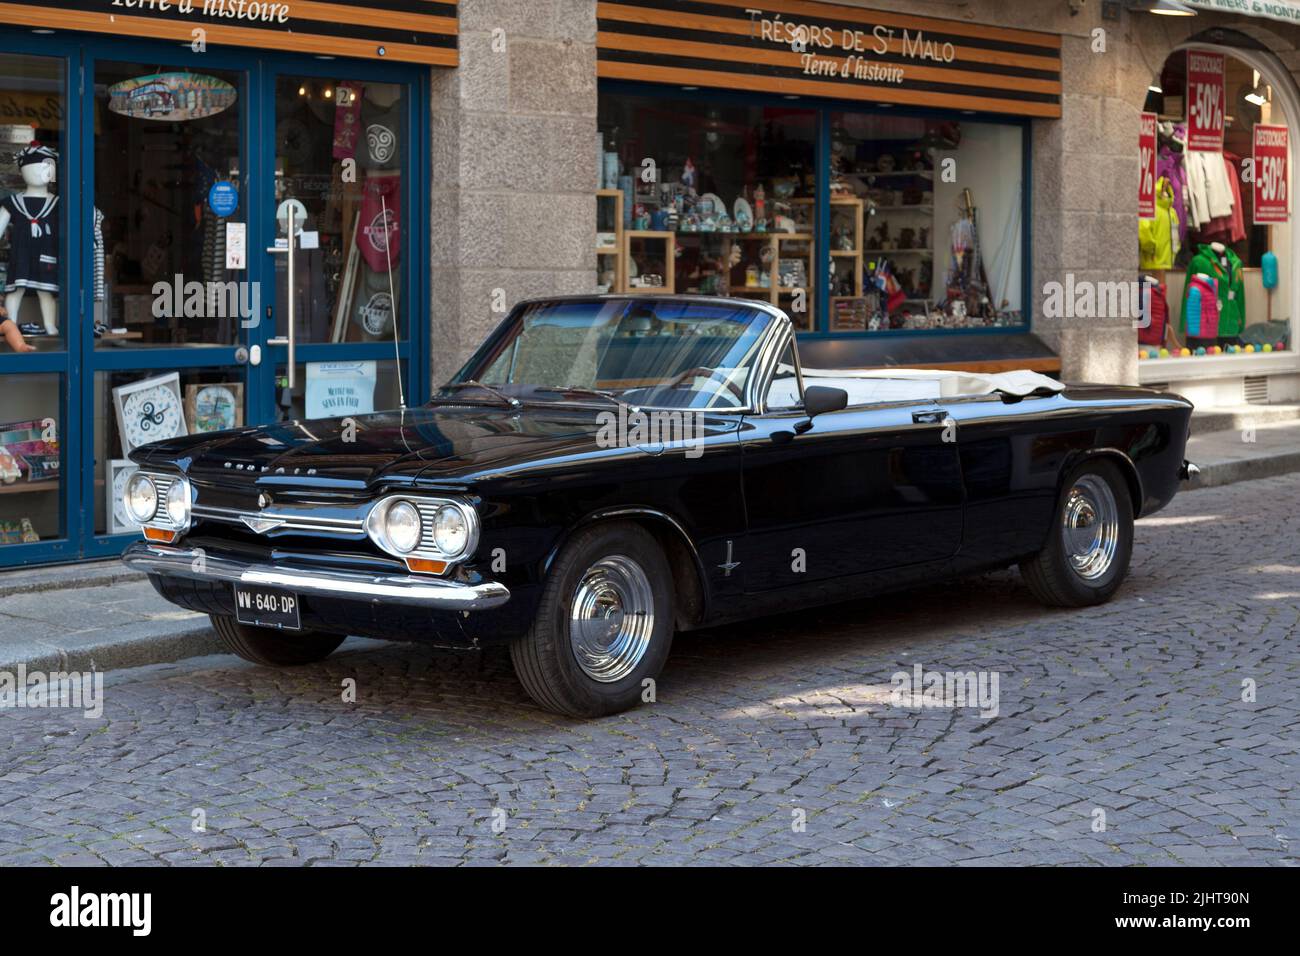 Saint-Malo, France - 02 juin 2020 : Cabriolet Corvair Monza 1964 de Chevrolet garée dans la rue. Banque D'Images